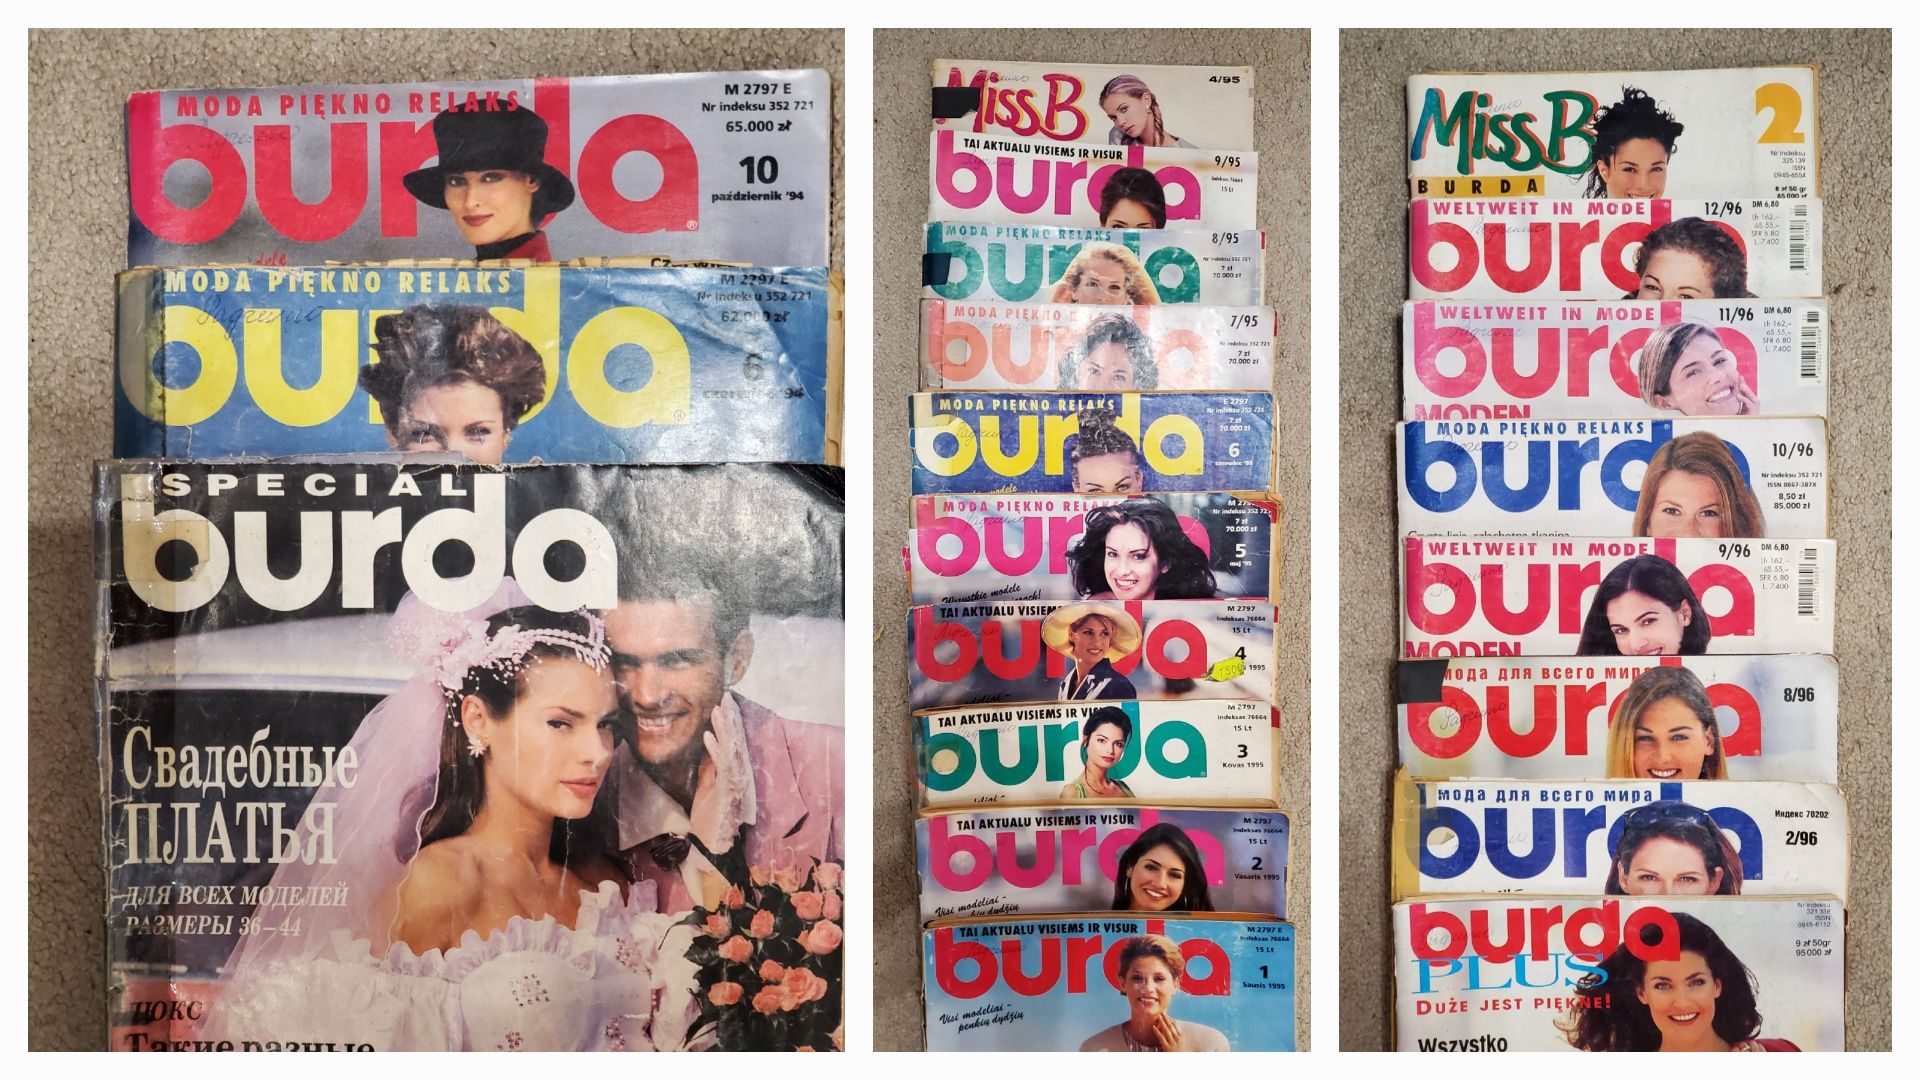 Журнали Бурда з 1994 до 2010 року